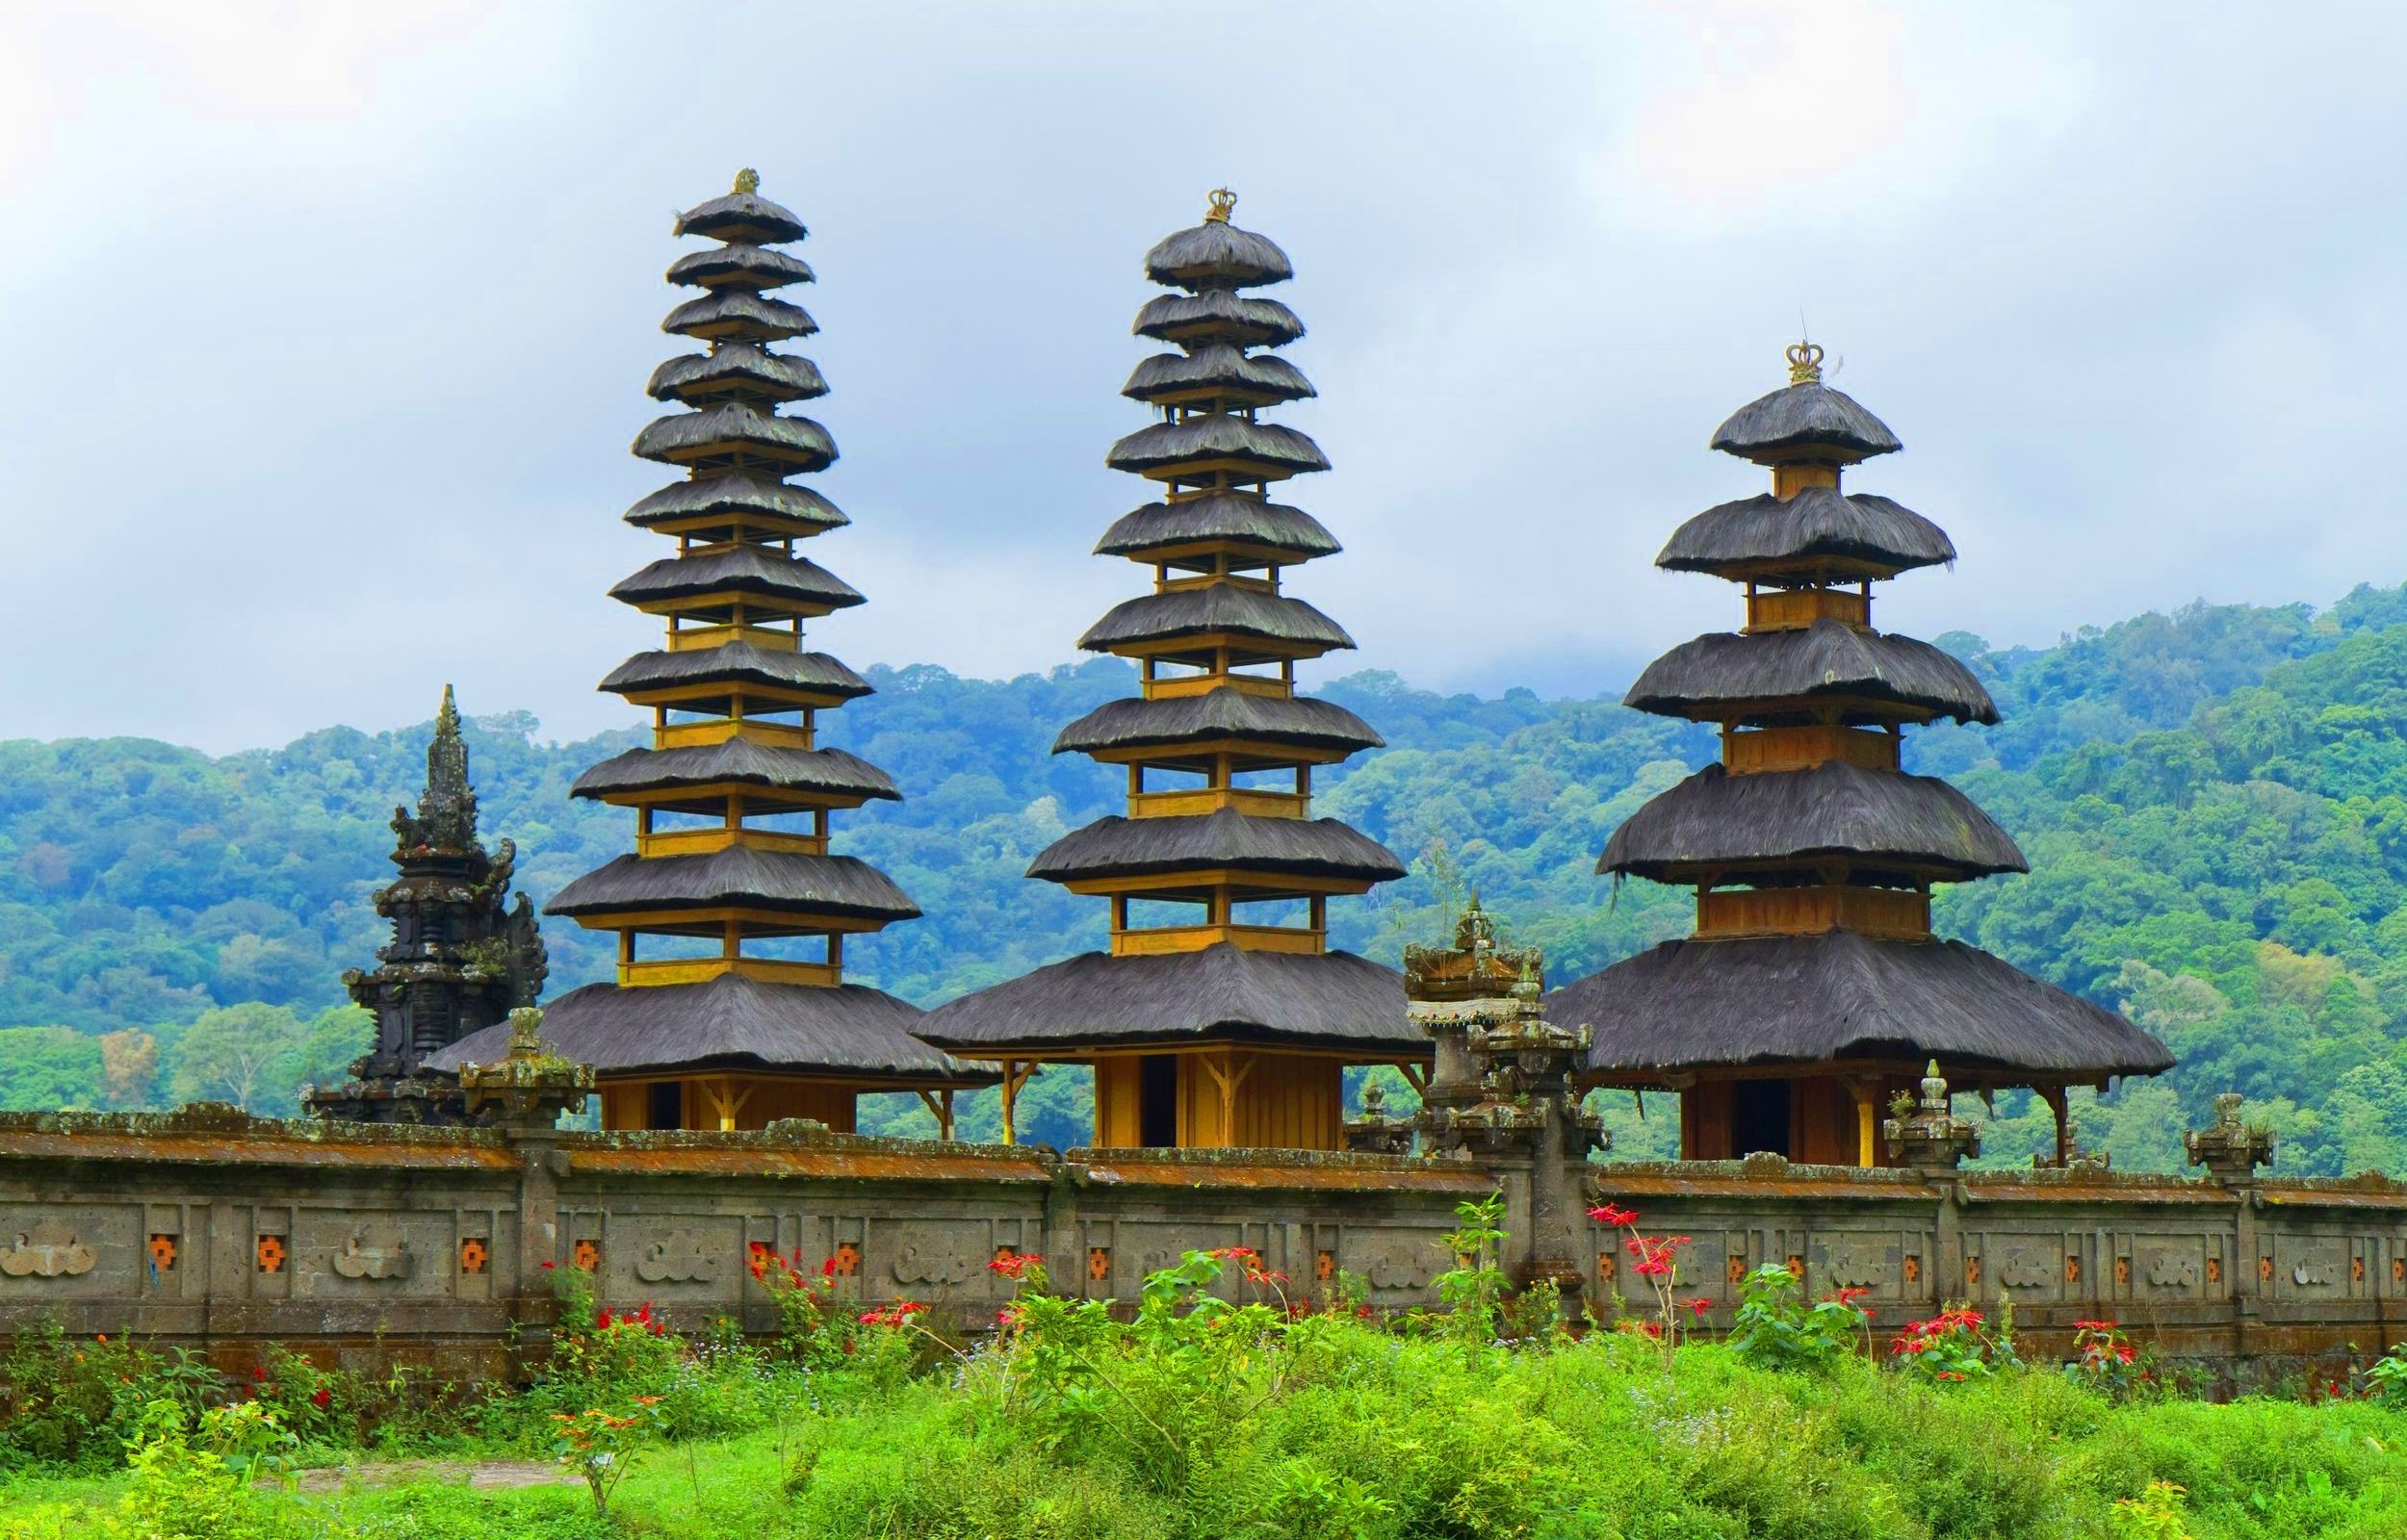 General 2500x1600 landscape architecture temple Indonesia Asian architecture Hindu Architecture Hinduism